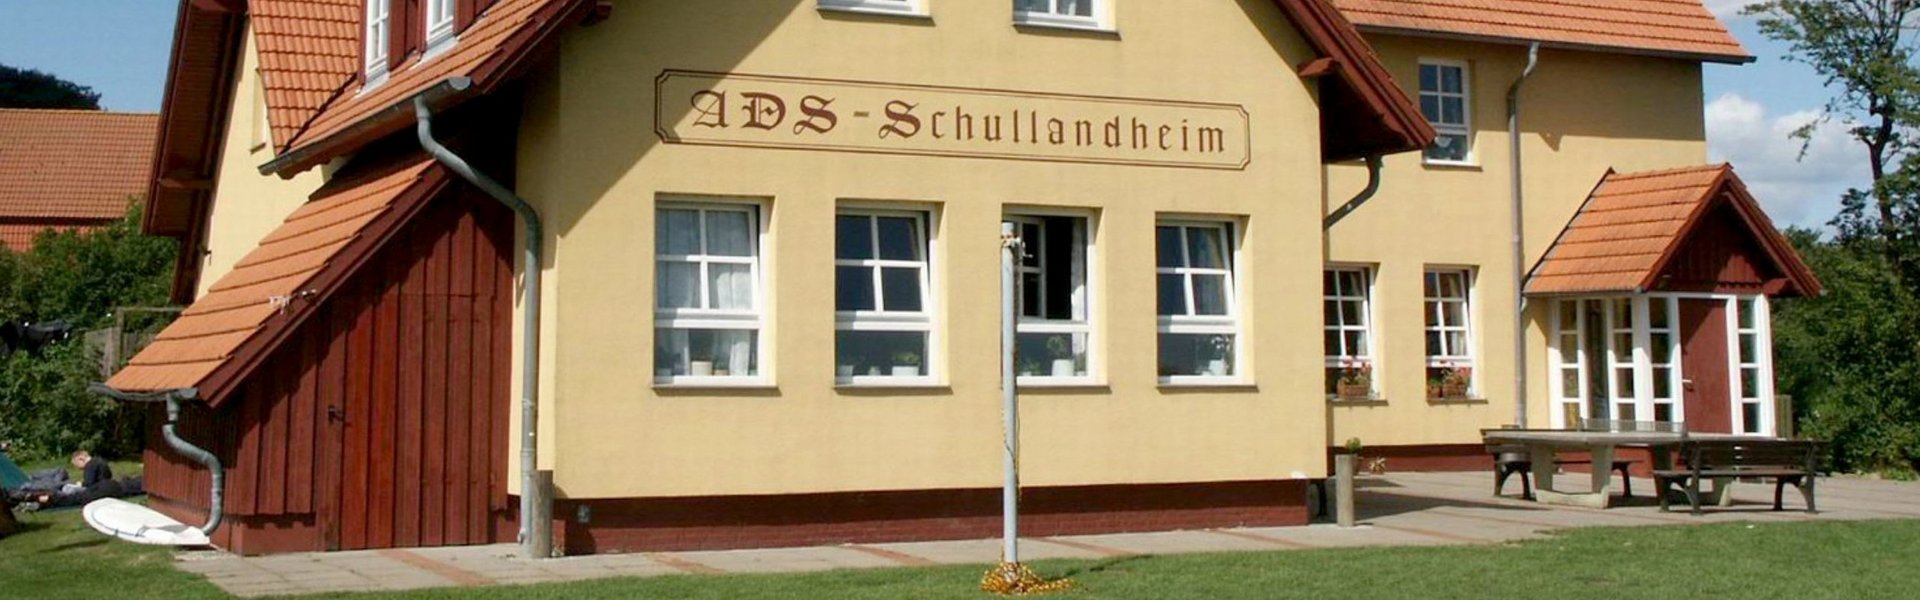 ADS Schullandheim Sylt